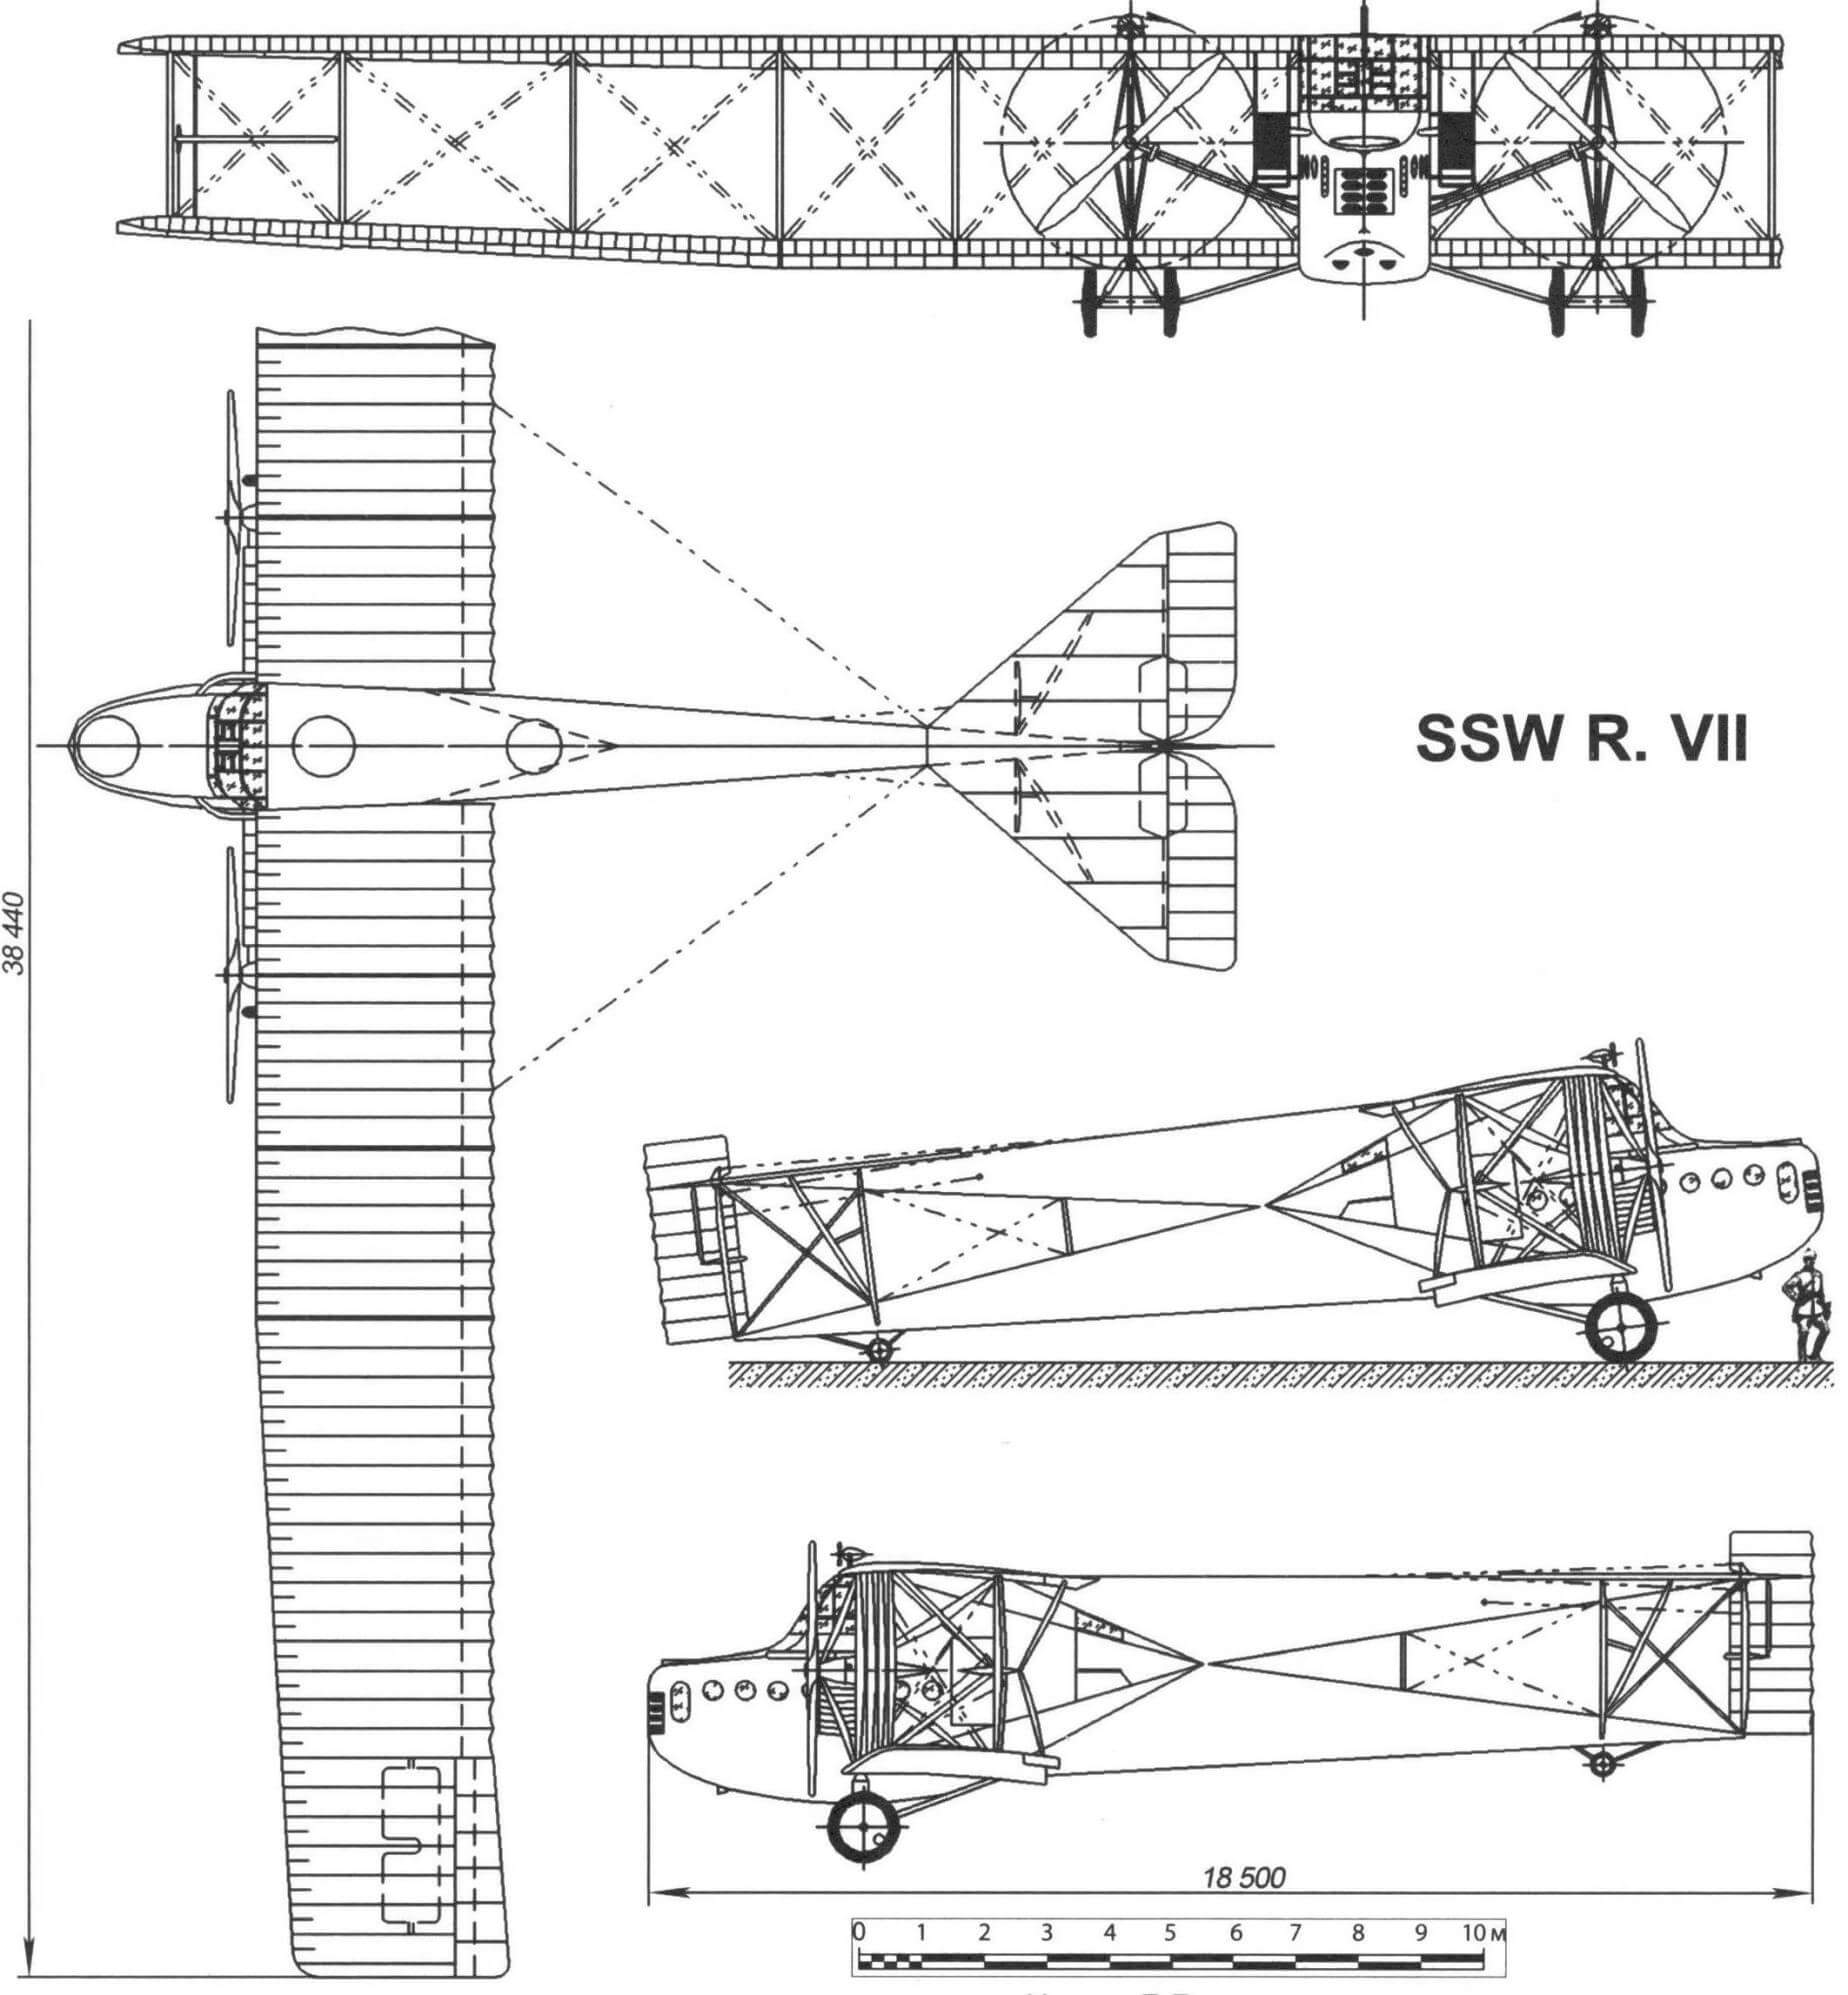 SSW R. VII